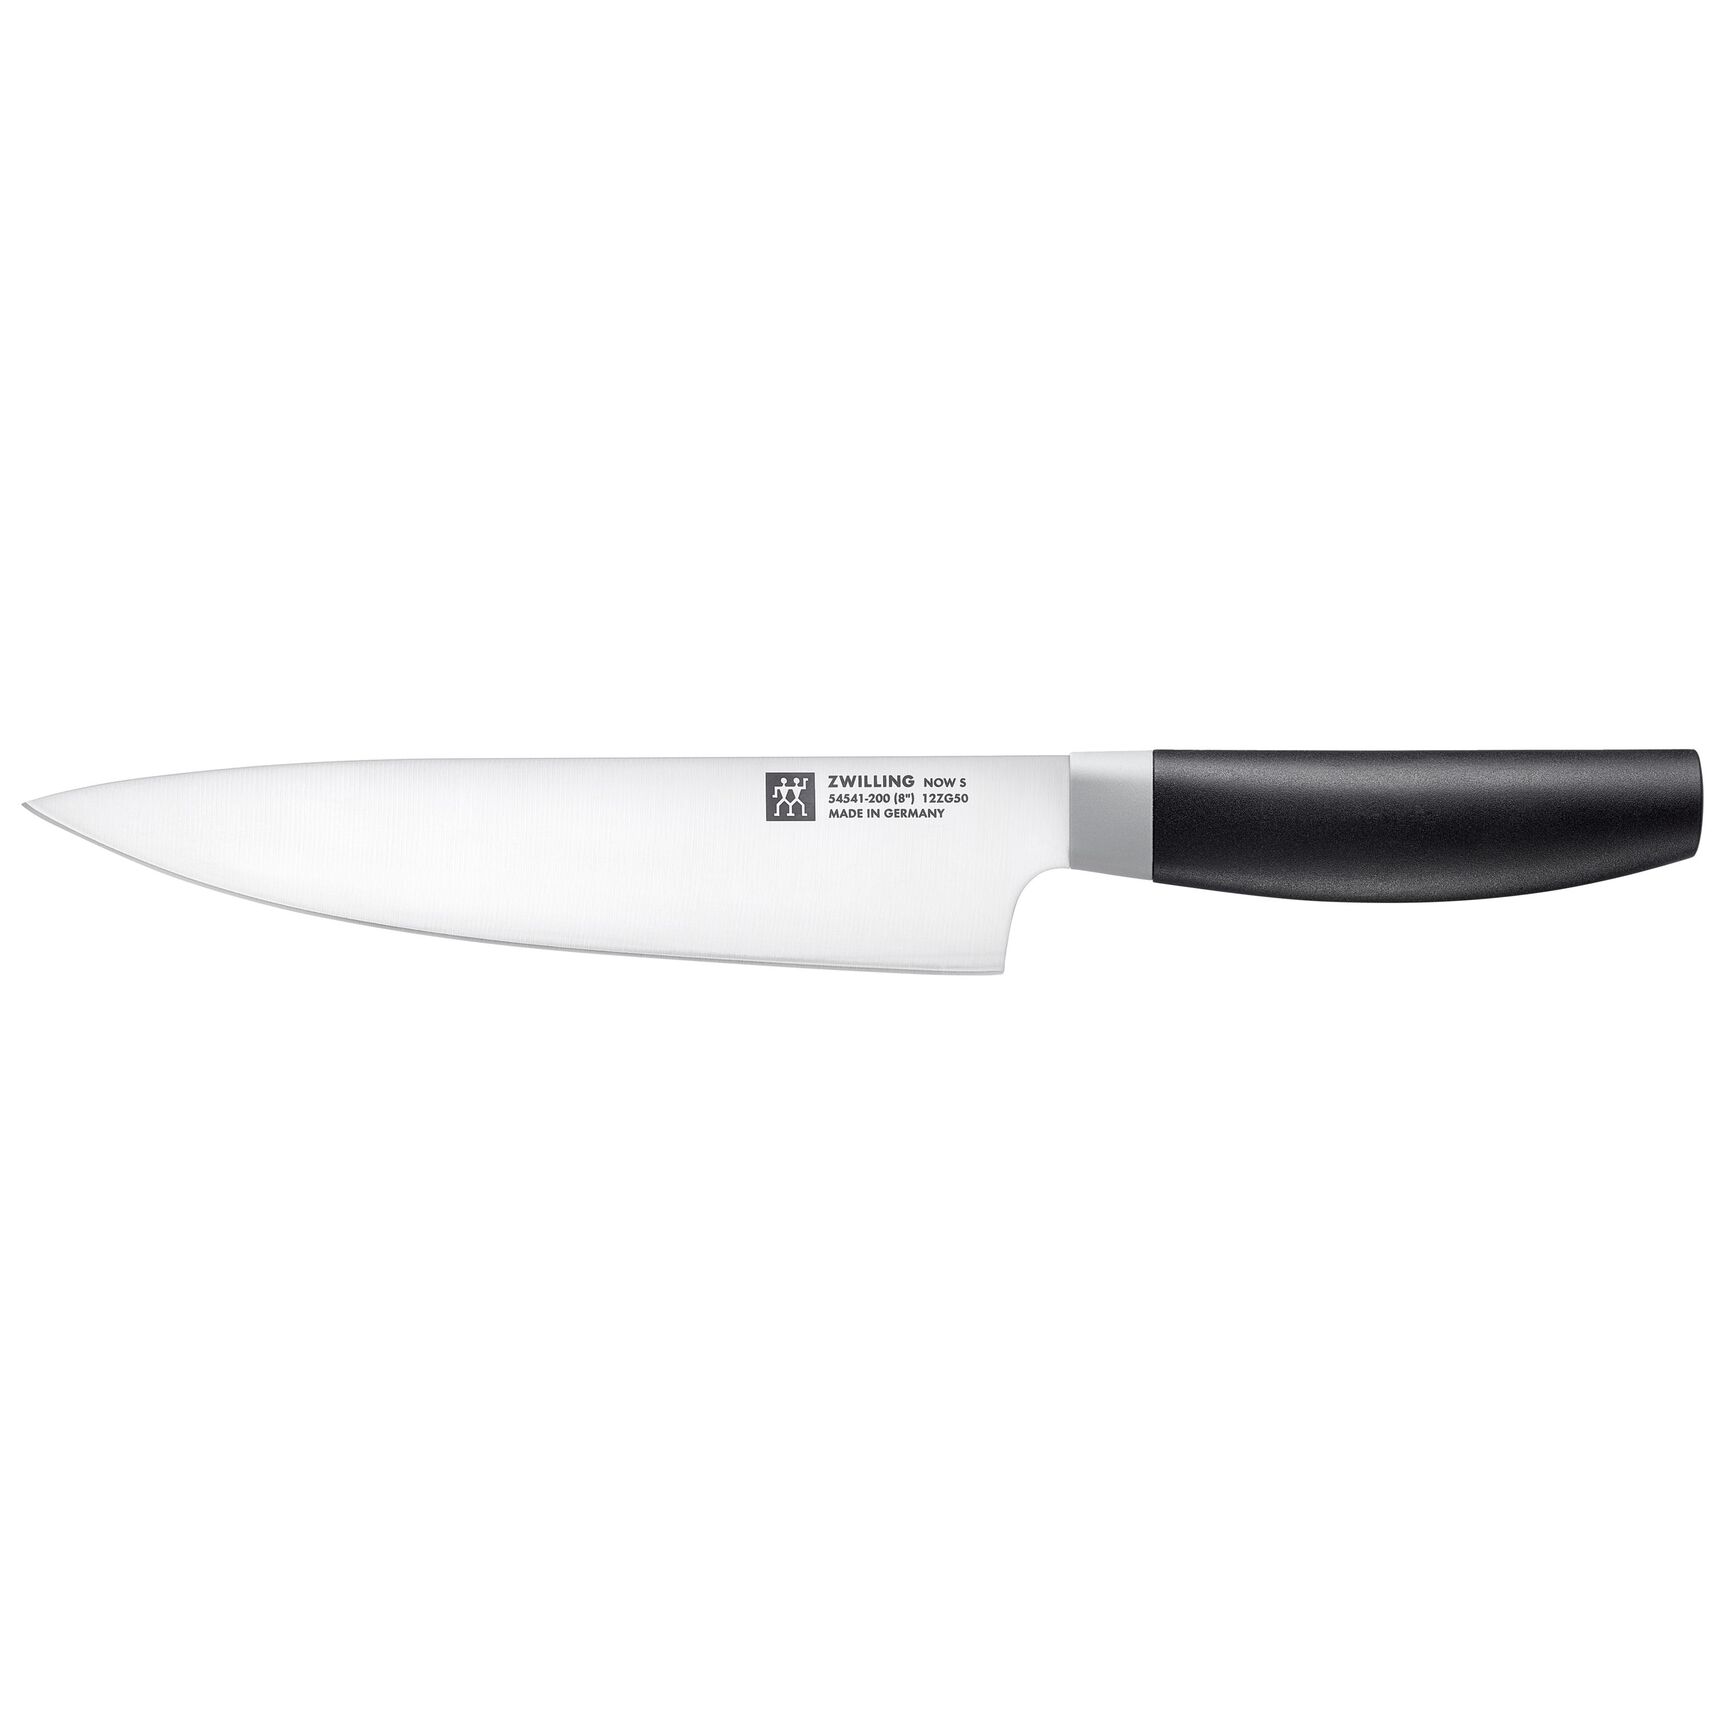 Gravure couteaux - Broderie vestes de cuisine - PROCOUTEAUX.COM